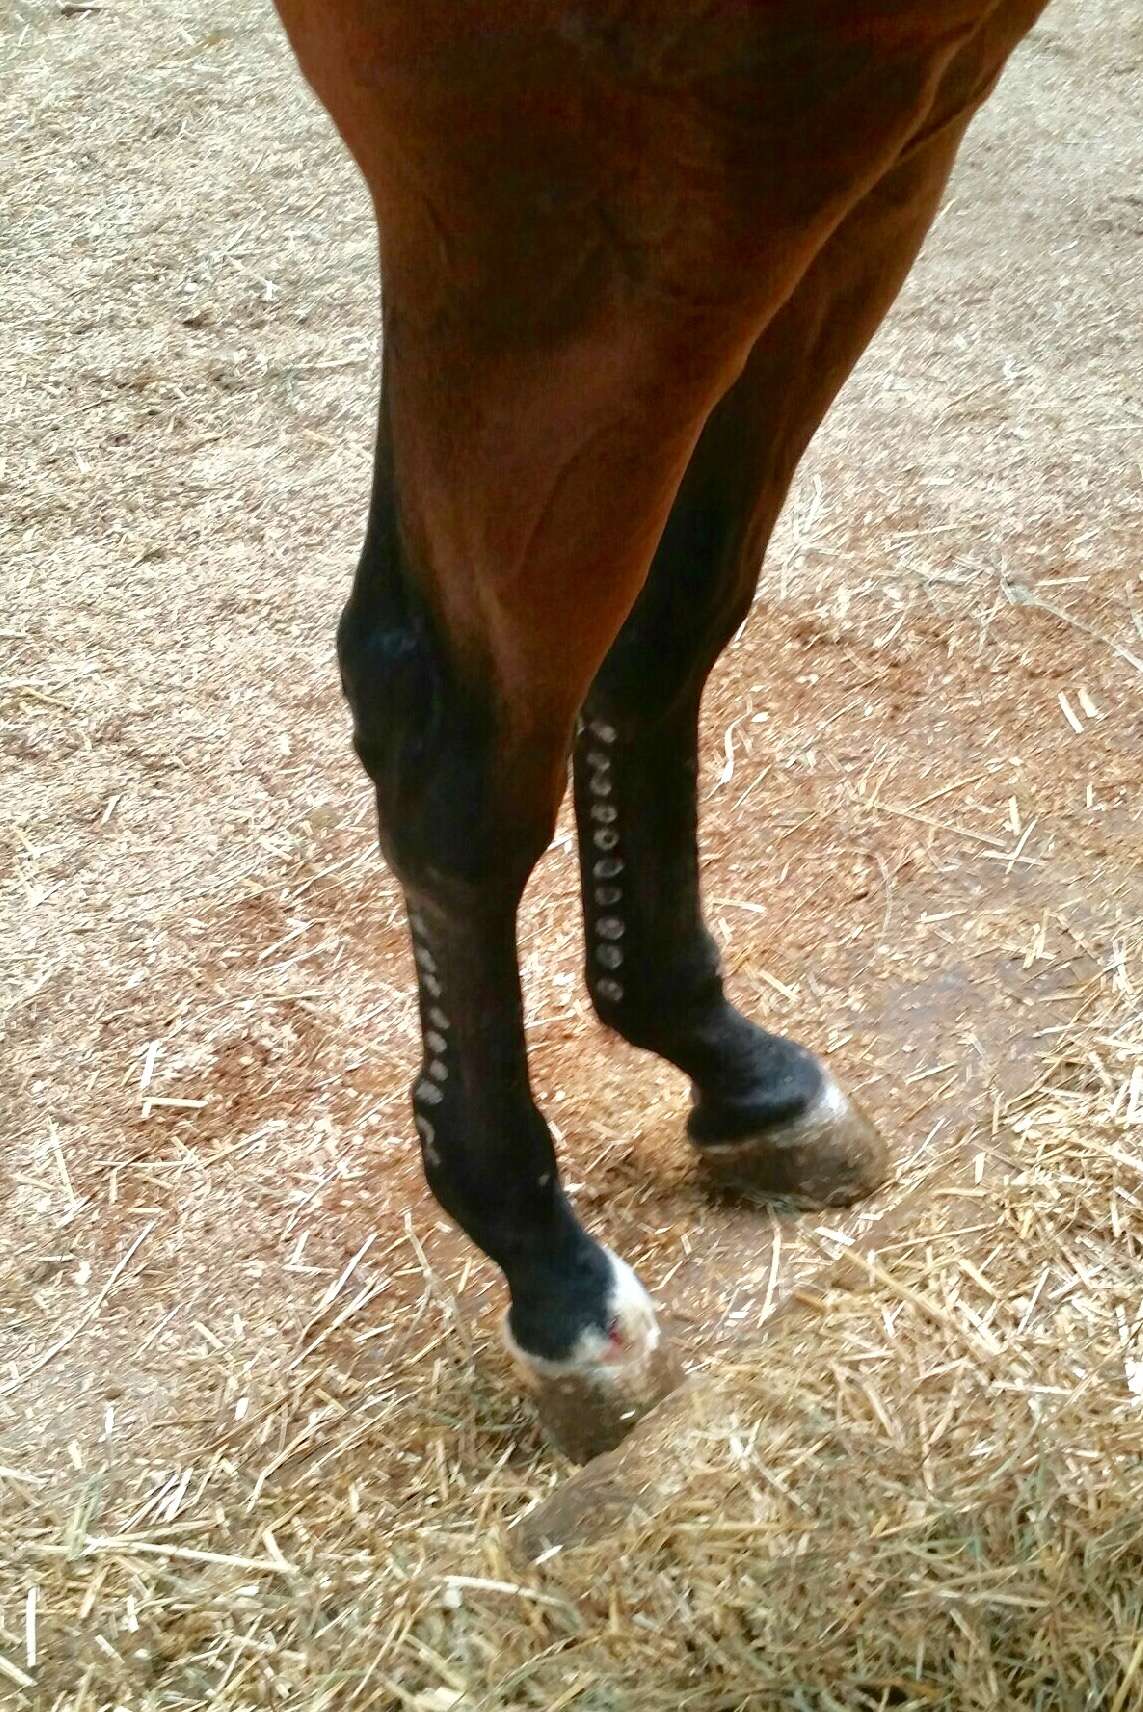 Holes on horse's leg